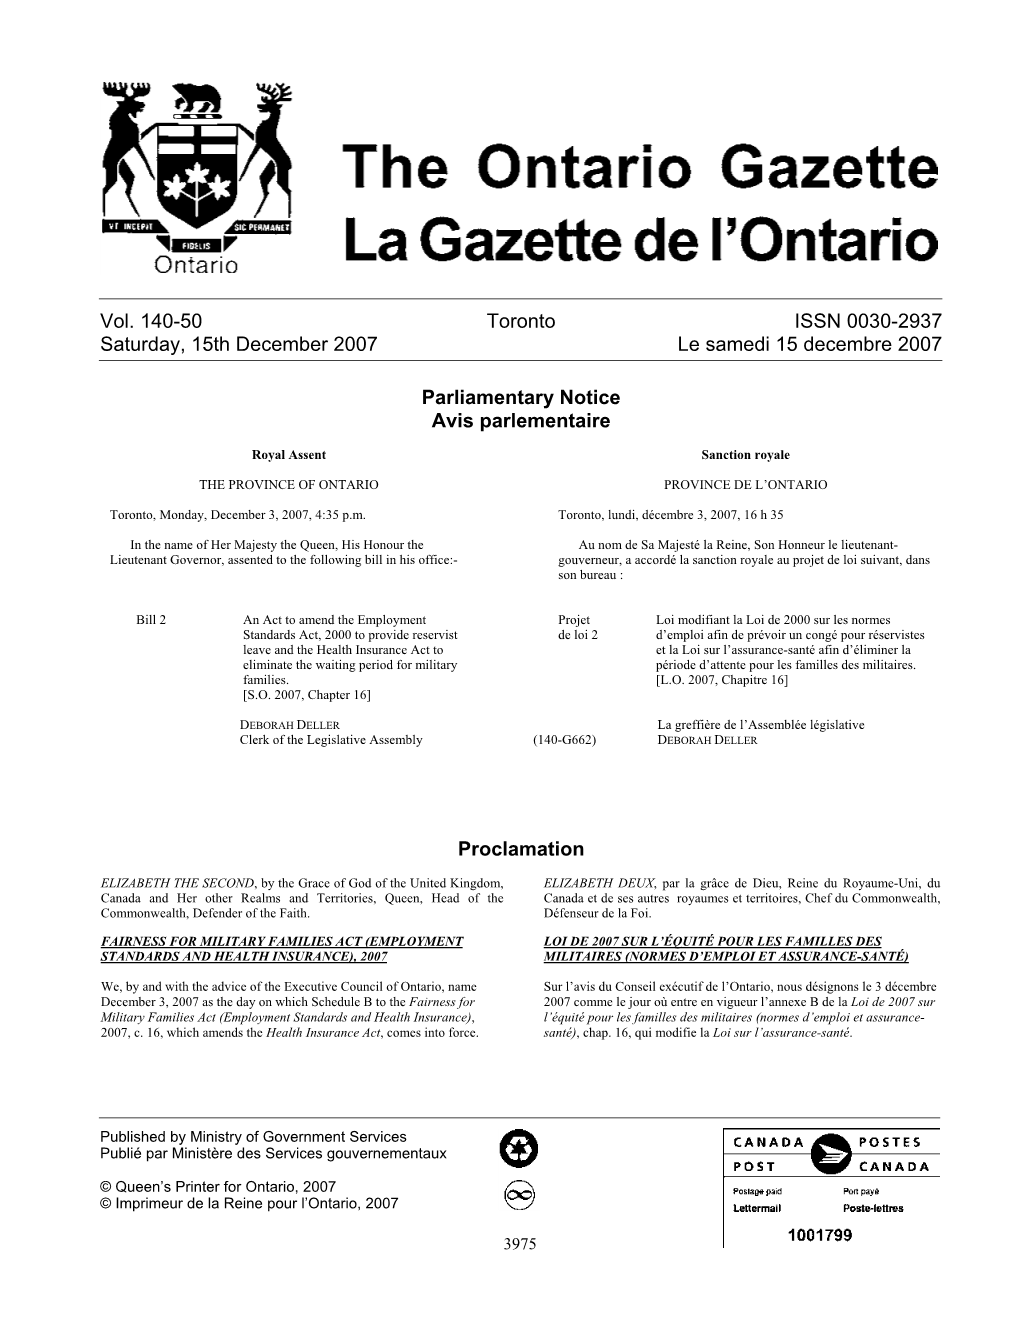 Ontario Gazette Volume 140 Issue 50, La Gazette De L'ontario Volume 140